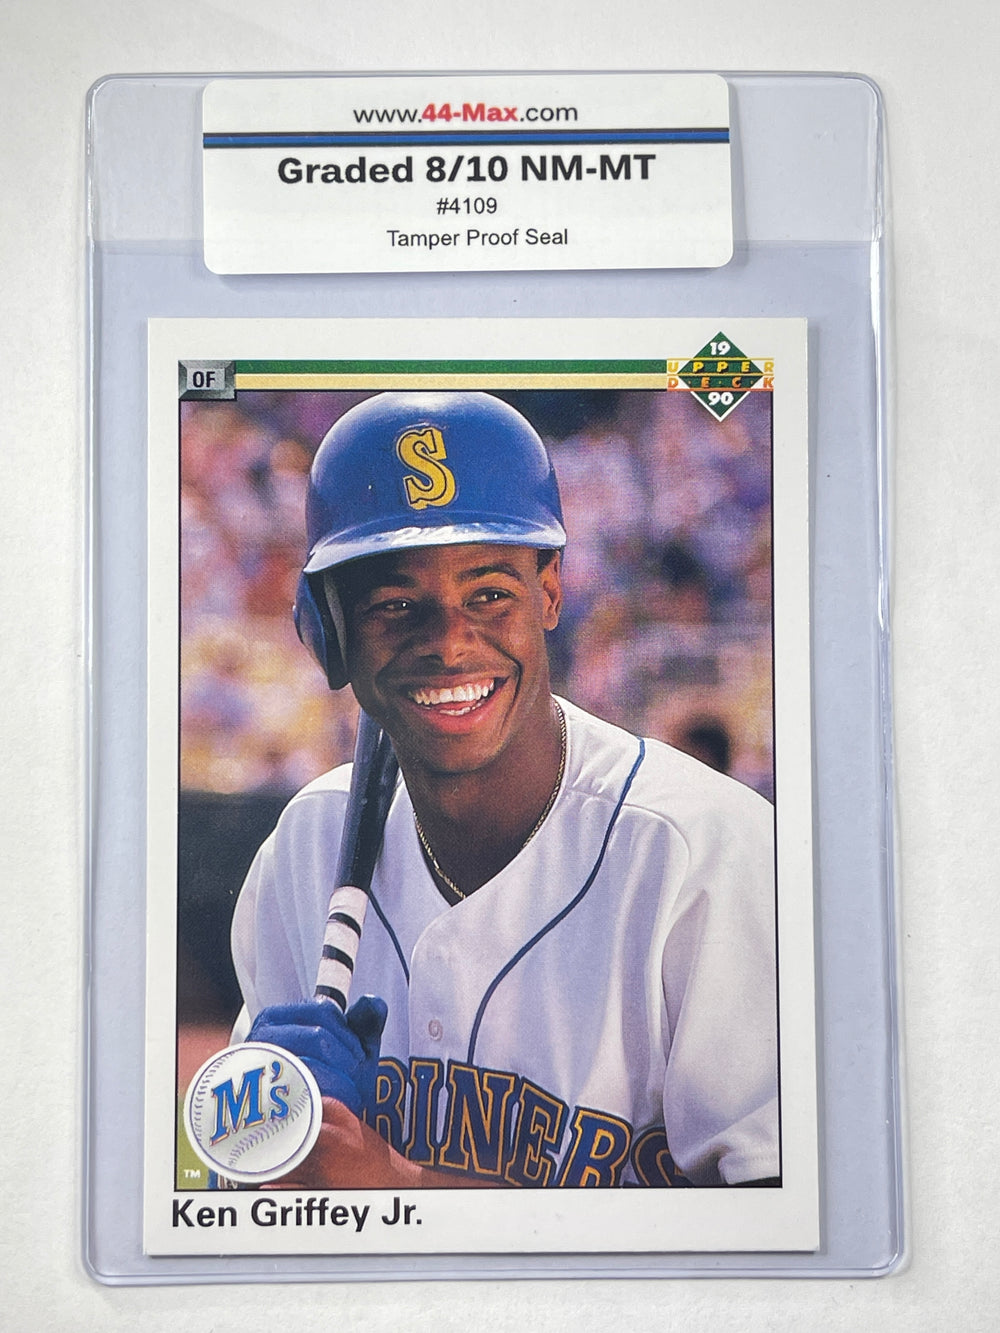 Ken Griffey Jr 1990 Upper Deck Baseball Card. 44-Max 8/10 NM-MT #4109